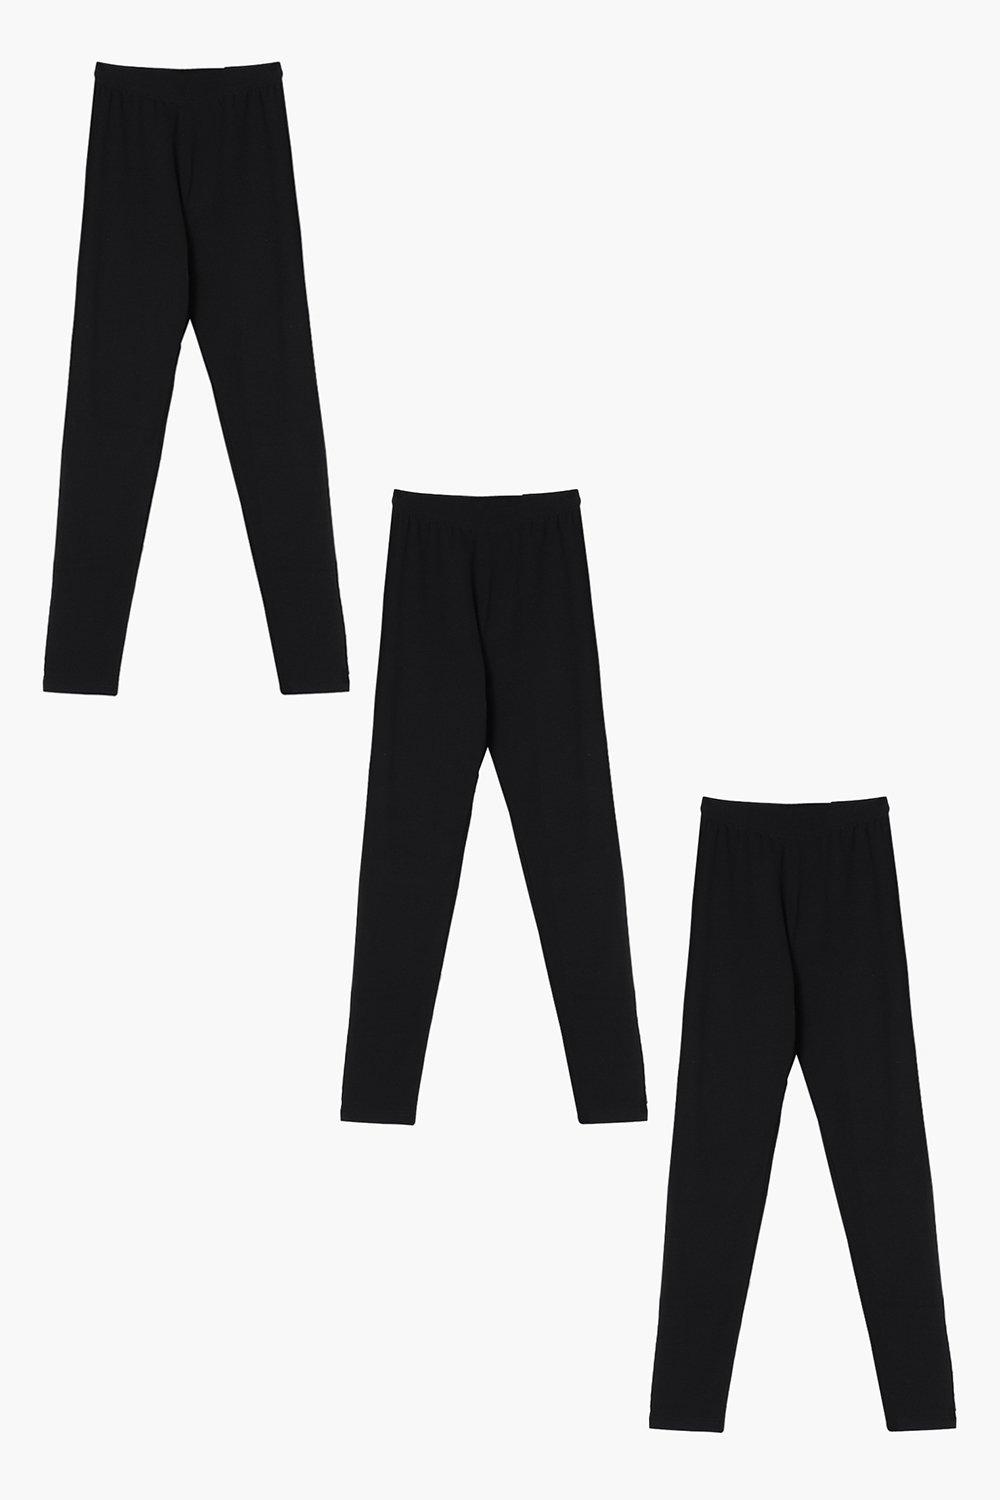 Women's Cotton 3 Pack Black High Waisted Leggings